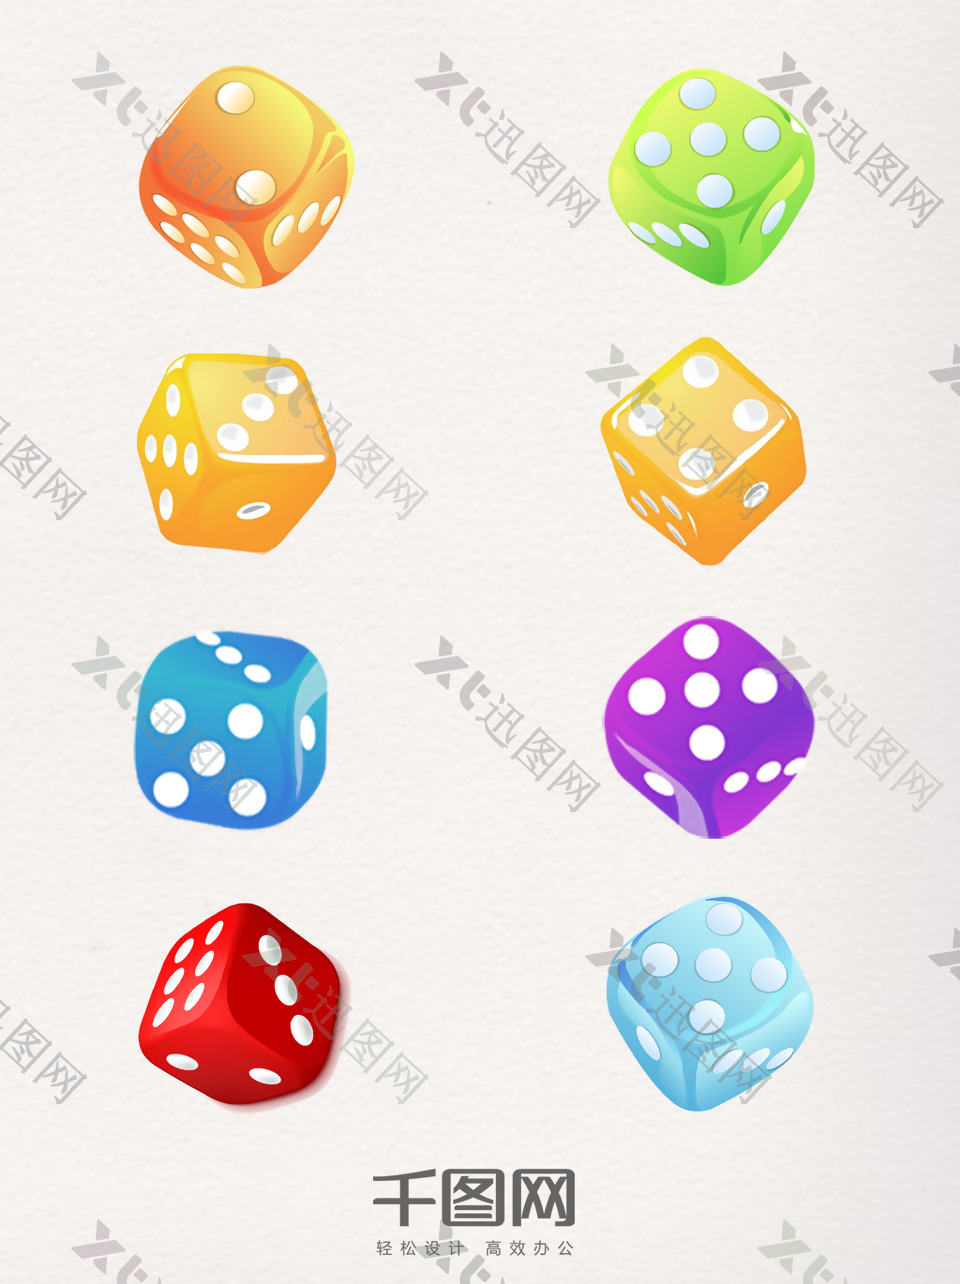 彩色装饰骰子图案元素集合